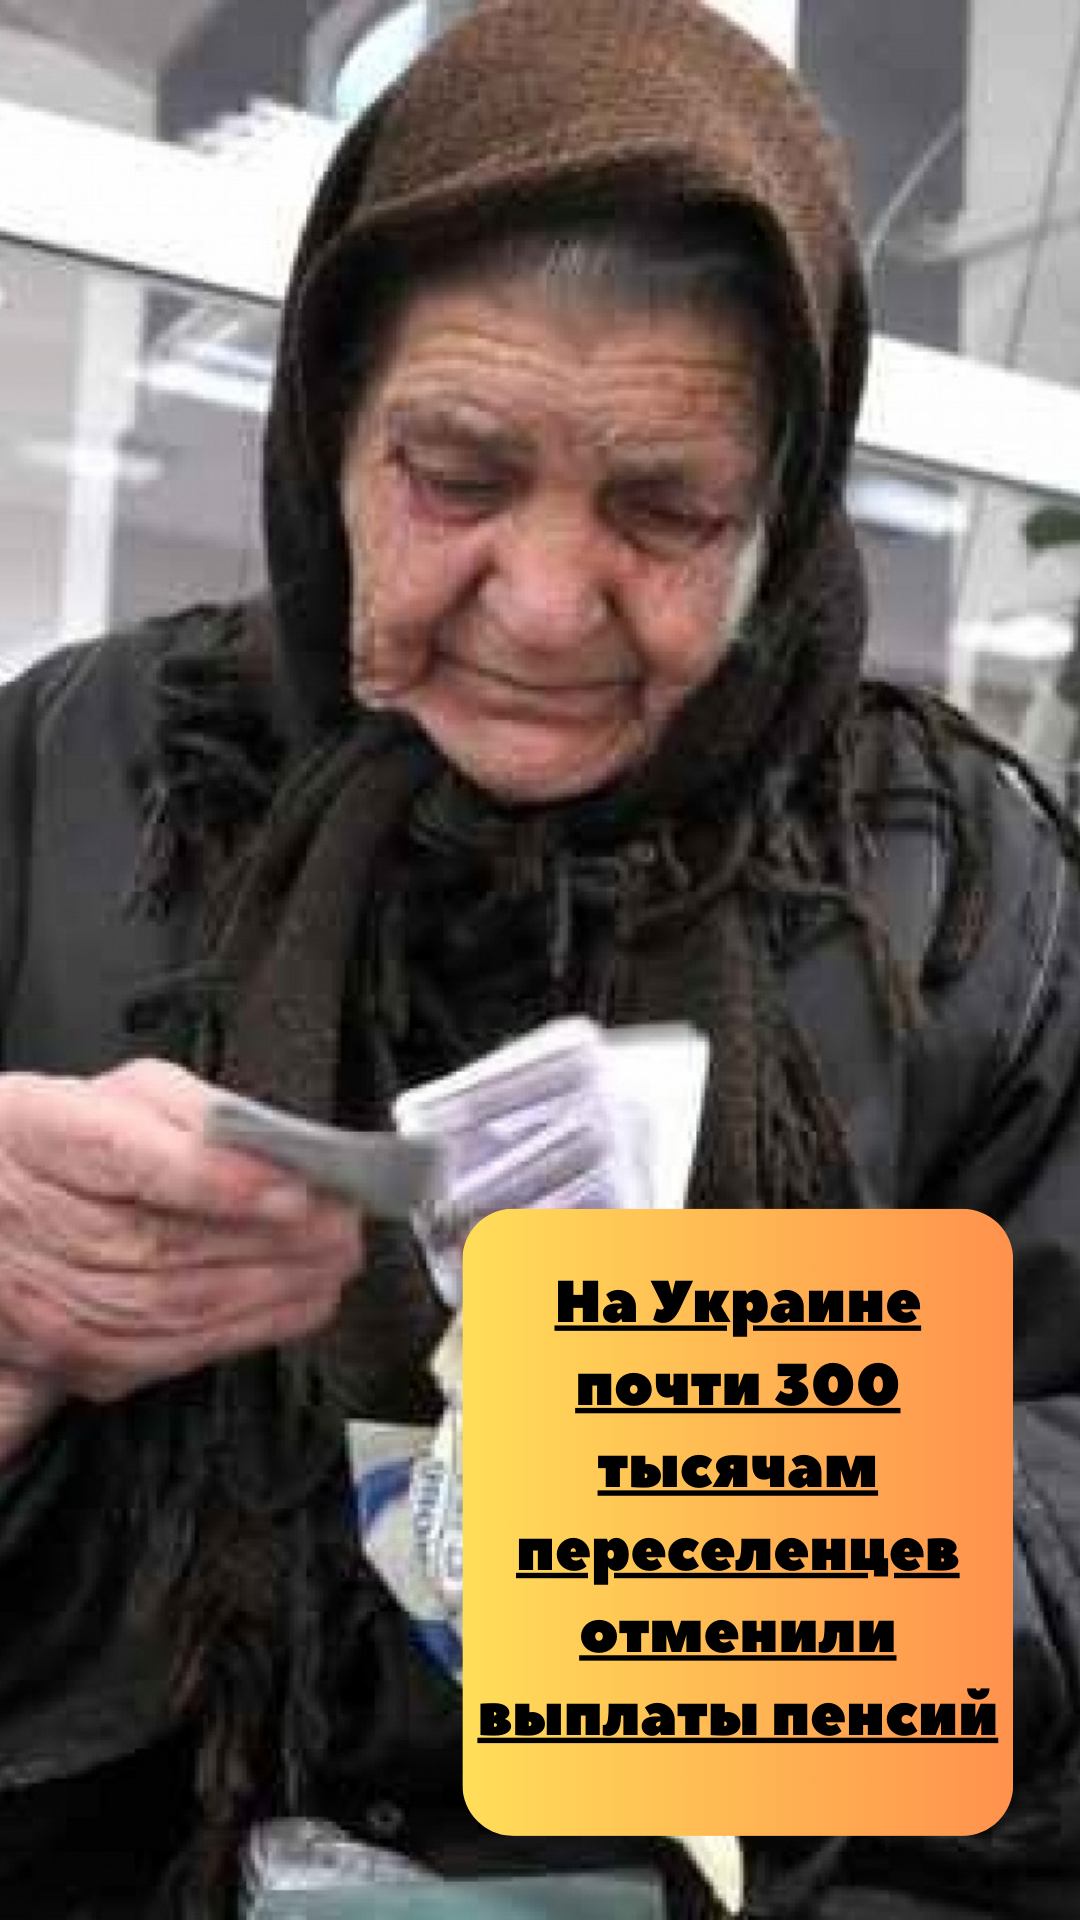 На Украине почти 300 тысячам переселенцев отменили выплаты пенсий